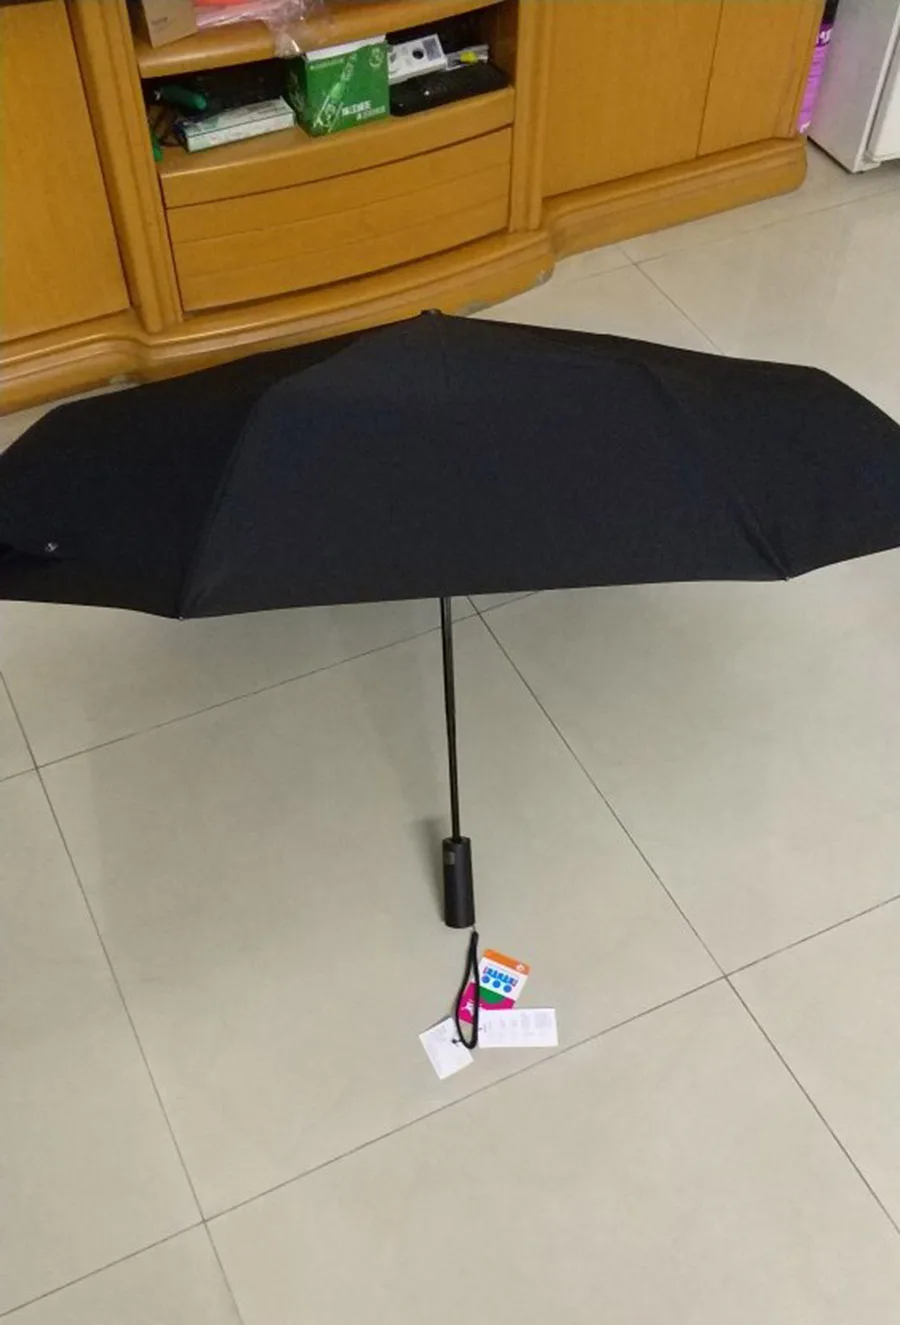 Xiaomi Mijia автоматический Солнечный дождливый Bumbershoot алюминиевый ветрозащитный водонепроницаемый УФ зонтик для мужчин и женщин летний зимний зонт